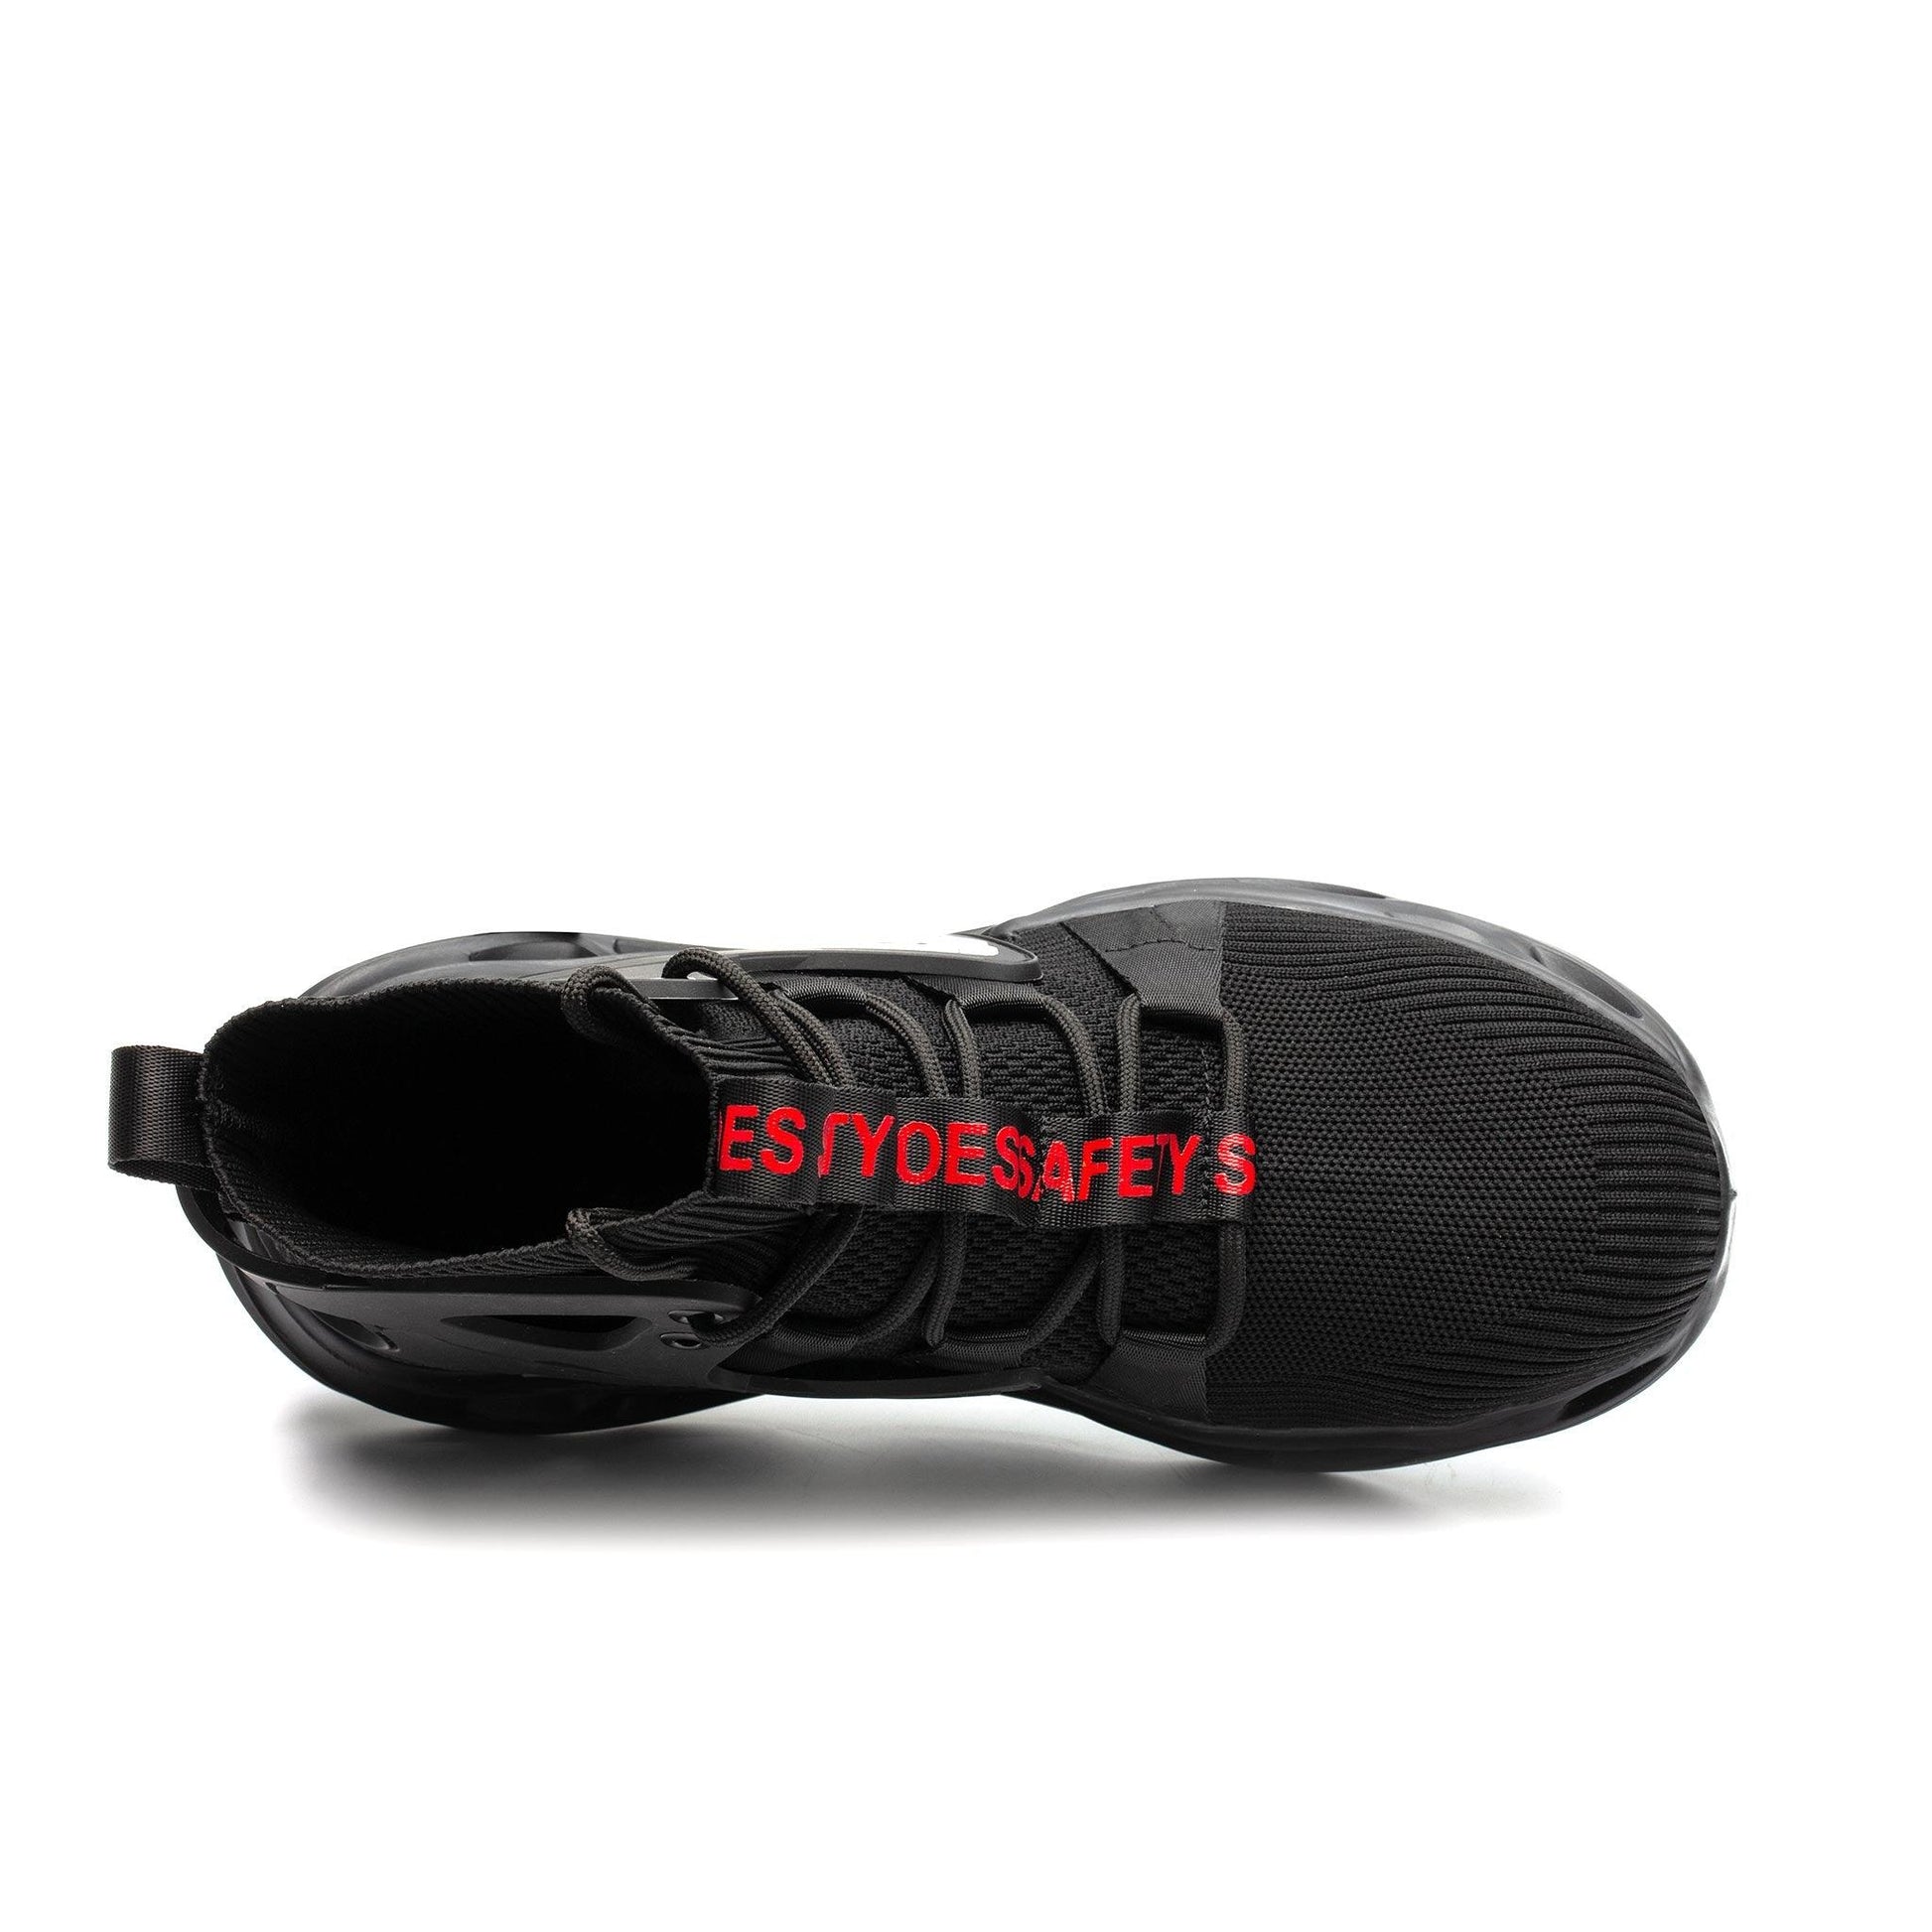 Men's Steel Toe Boots - Lightweight | B007 - USINE PRO Footwear